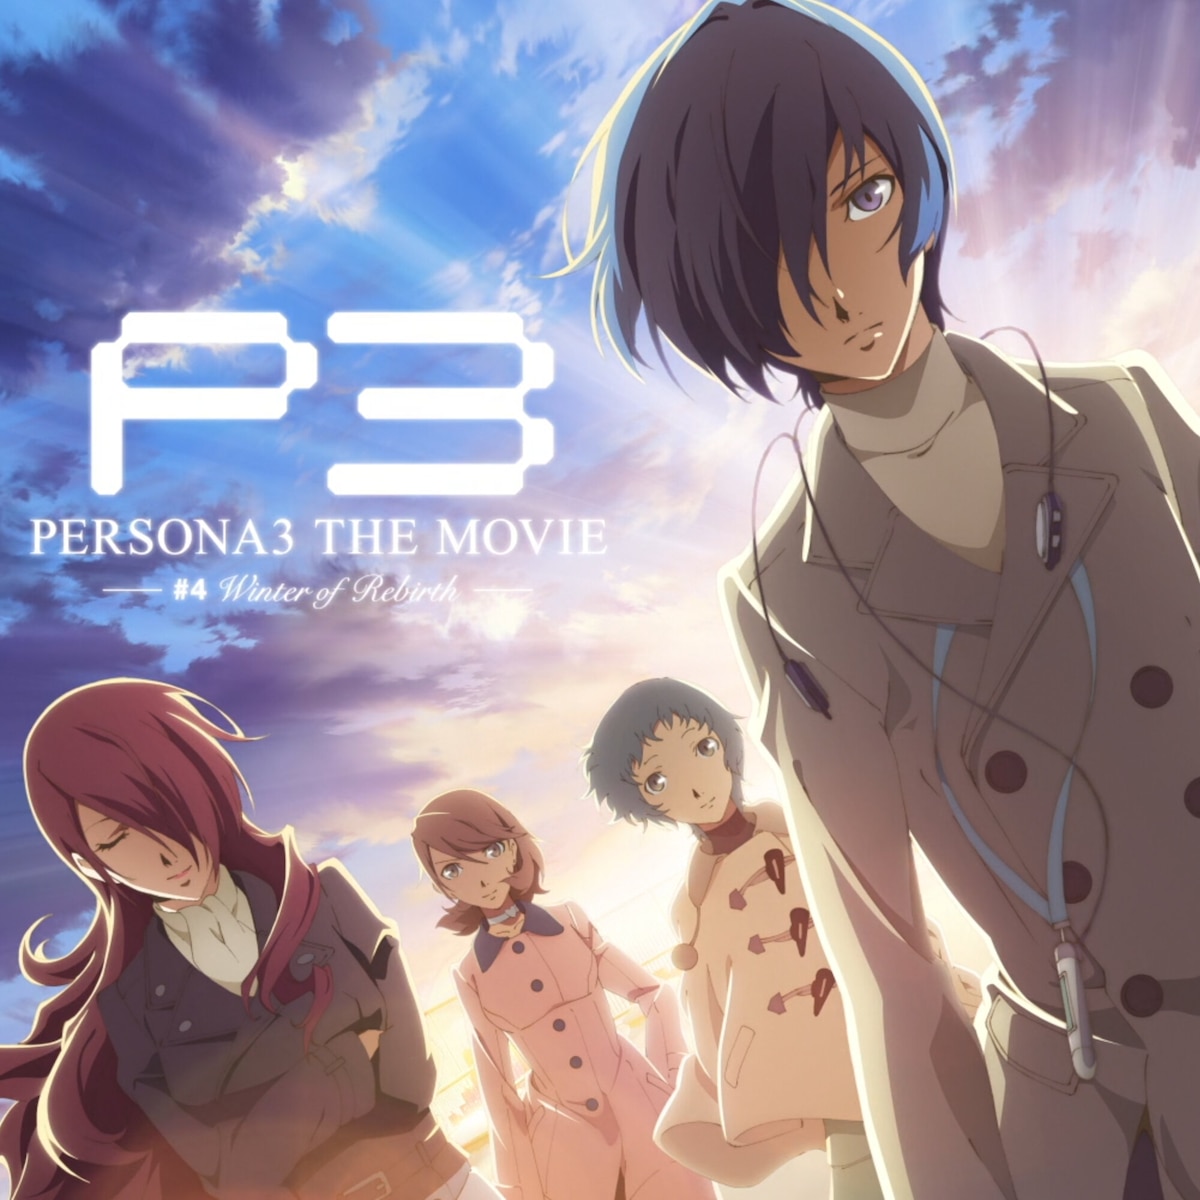 Persona 3 The Movie #4 - Winter of Rebirth Menu